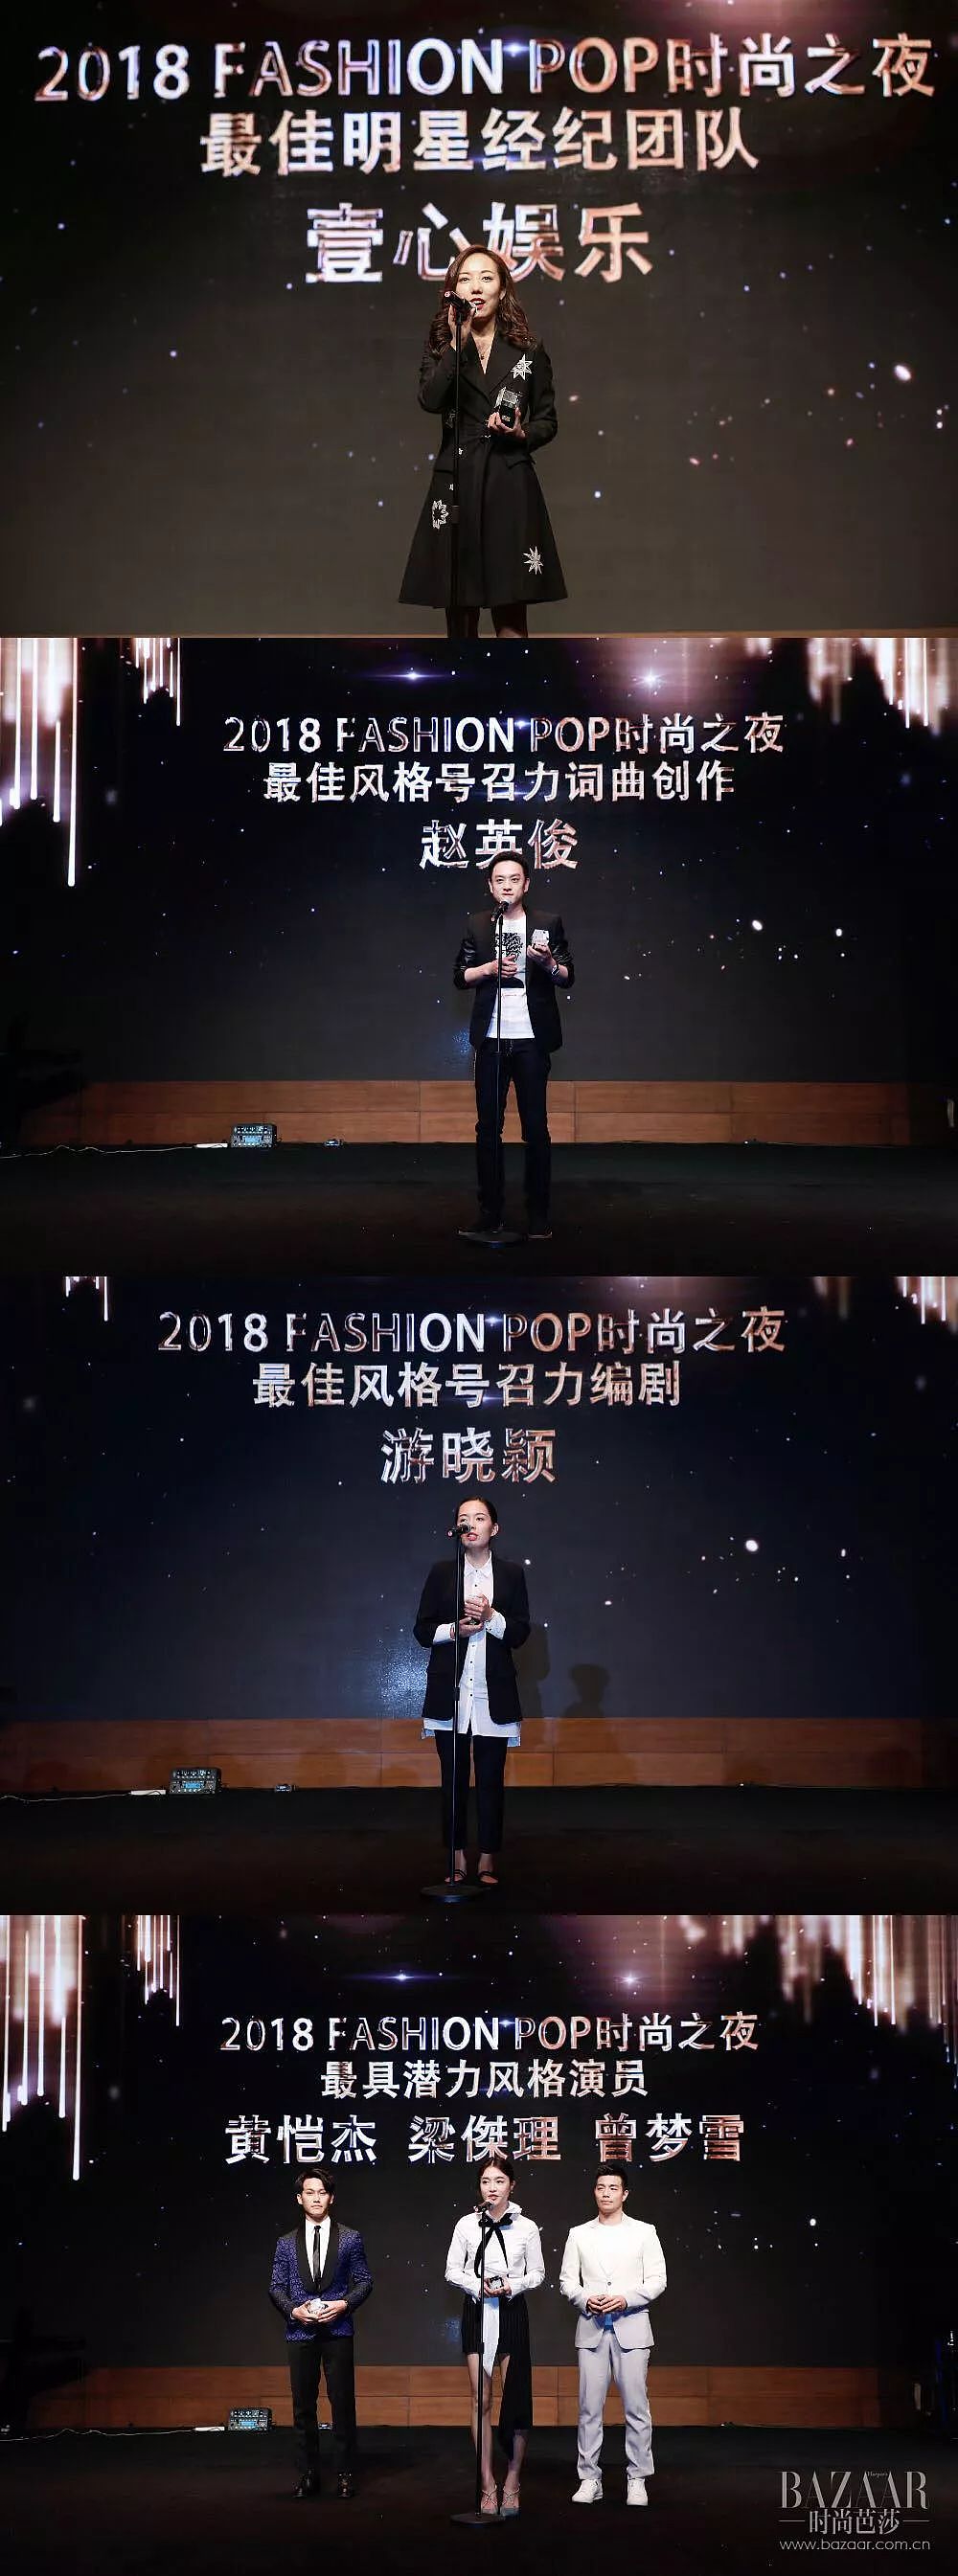 星光点亮2018 Fashion Pop时尚之夜 - 25